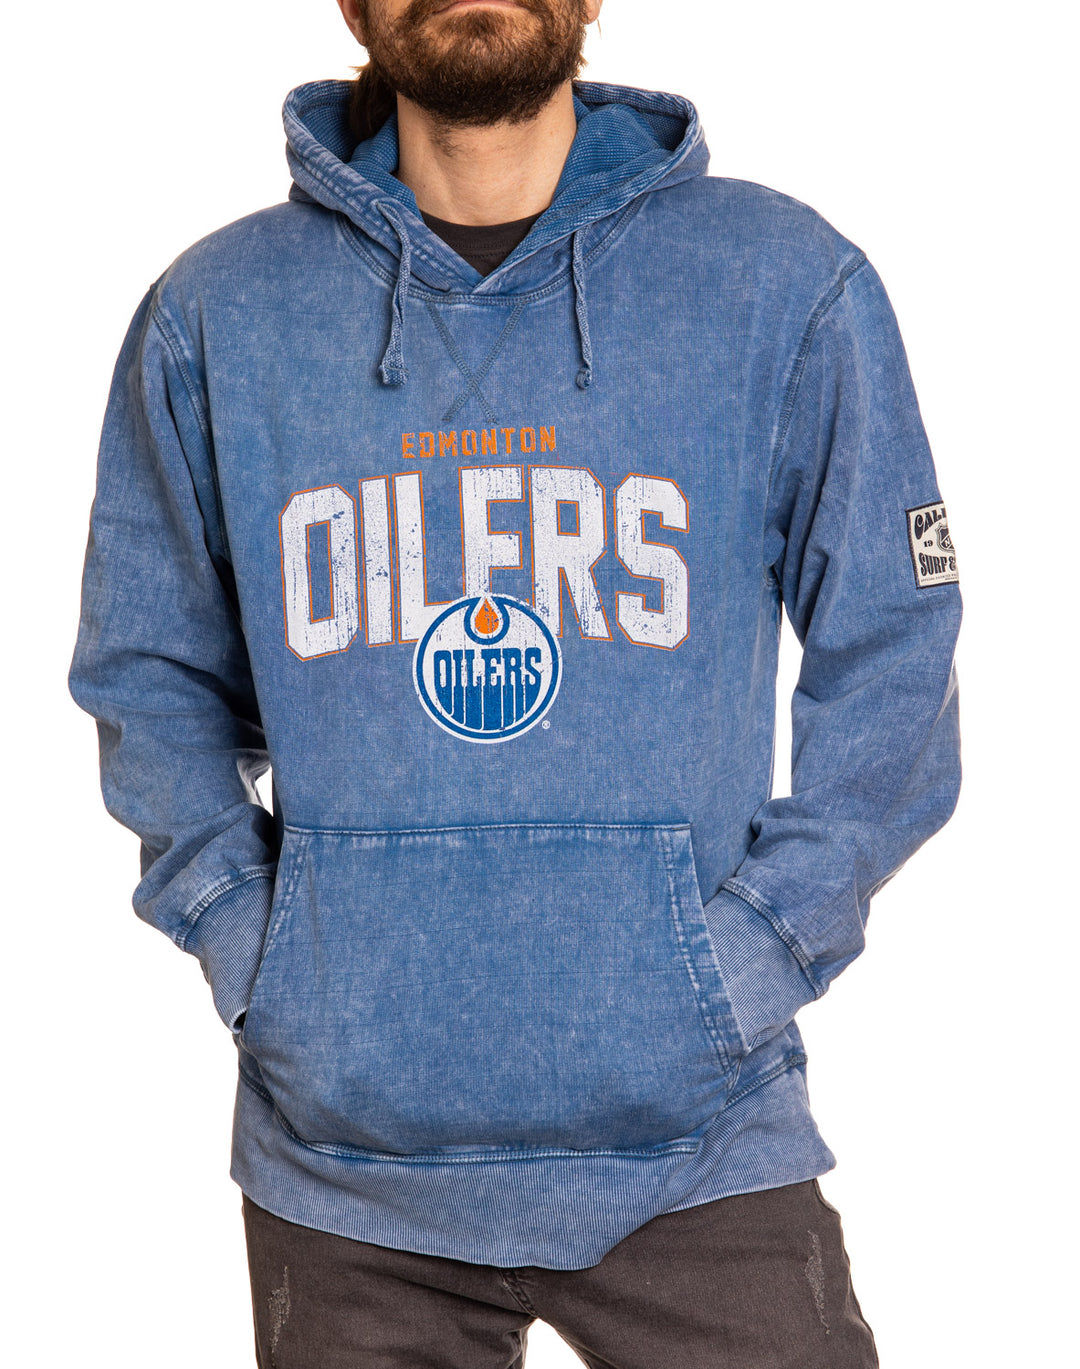 Official NHL licensed Edmonton Oilers Unisex Blue Acid Wash Hoodie